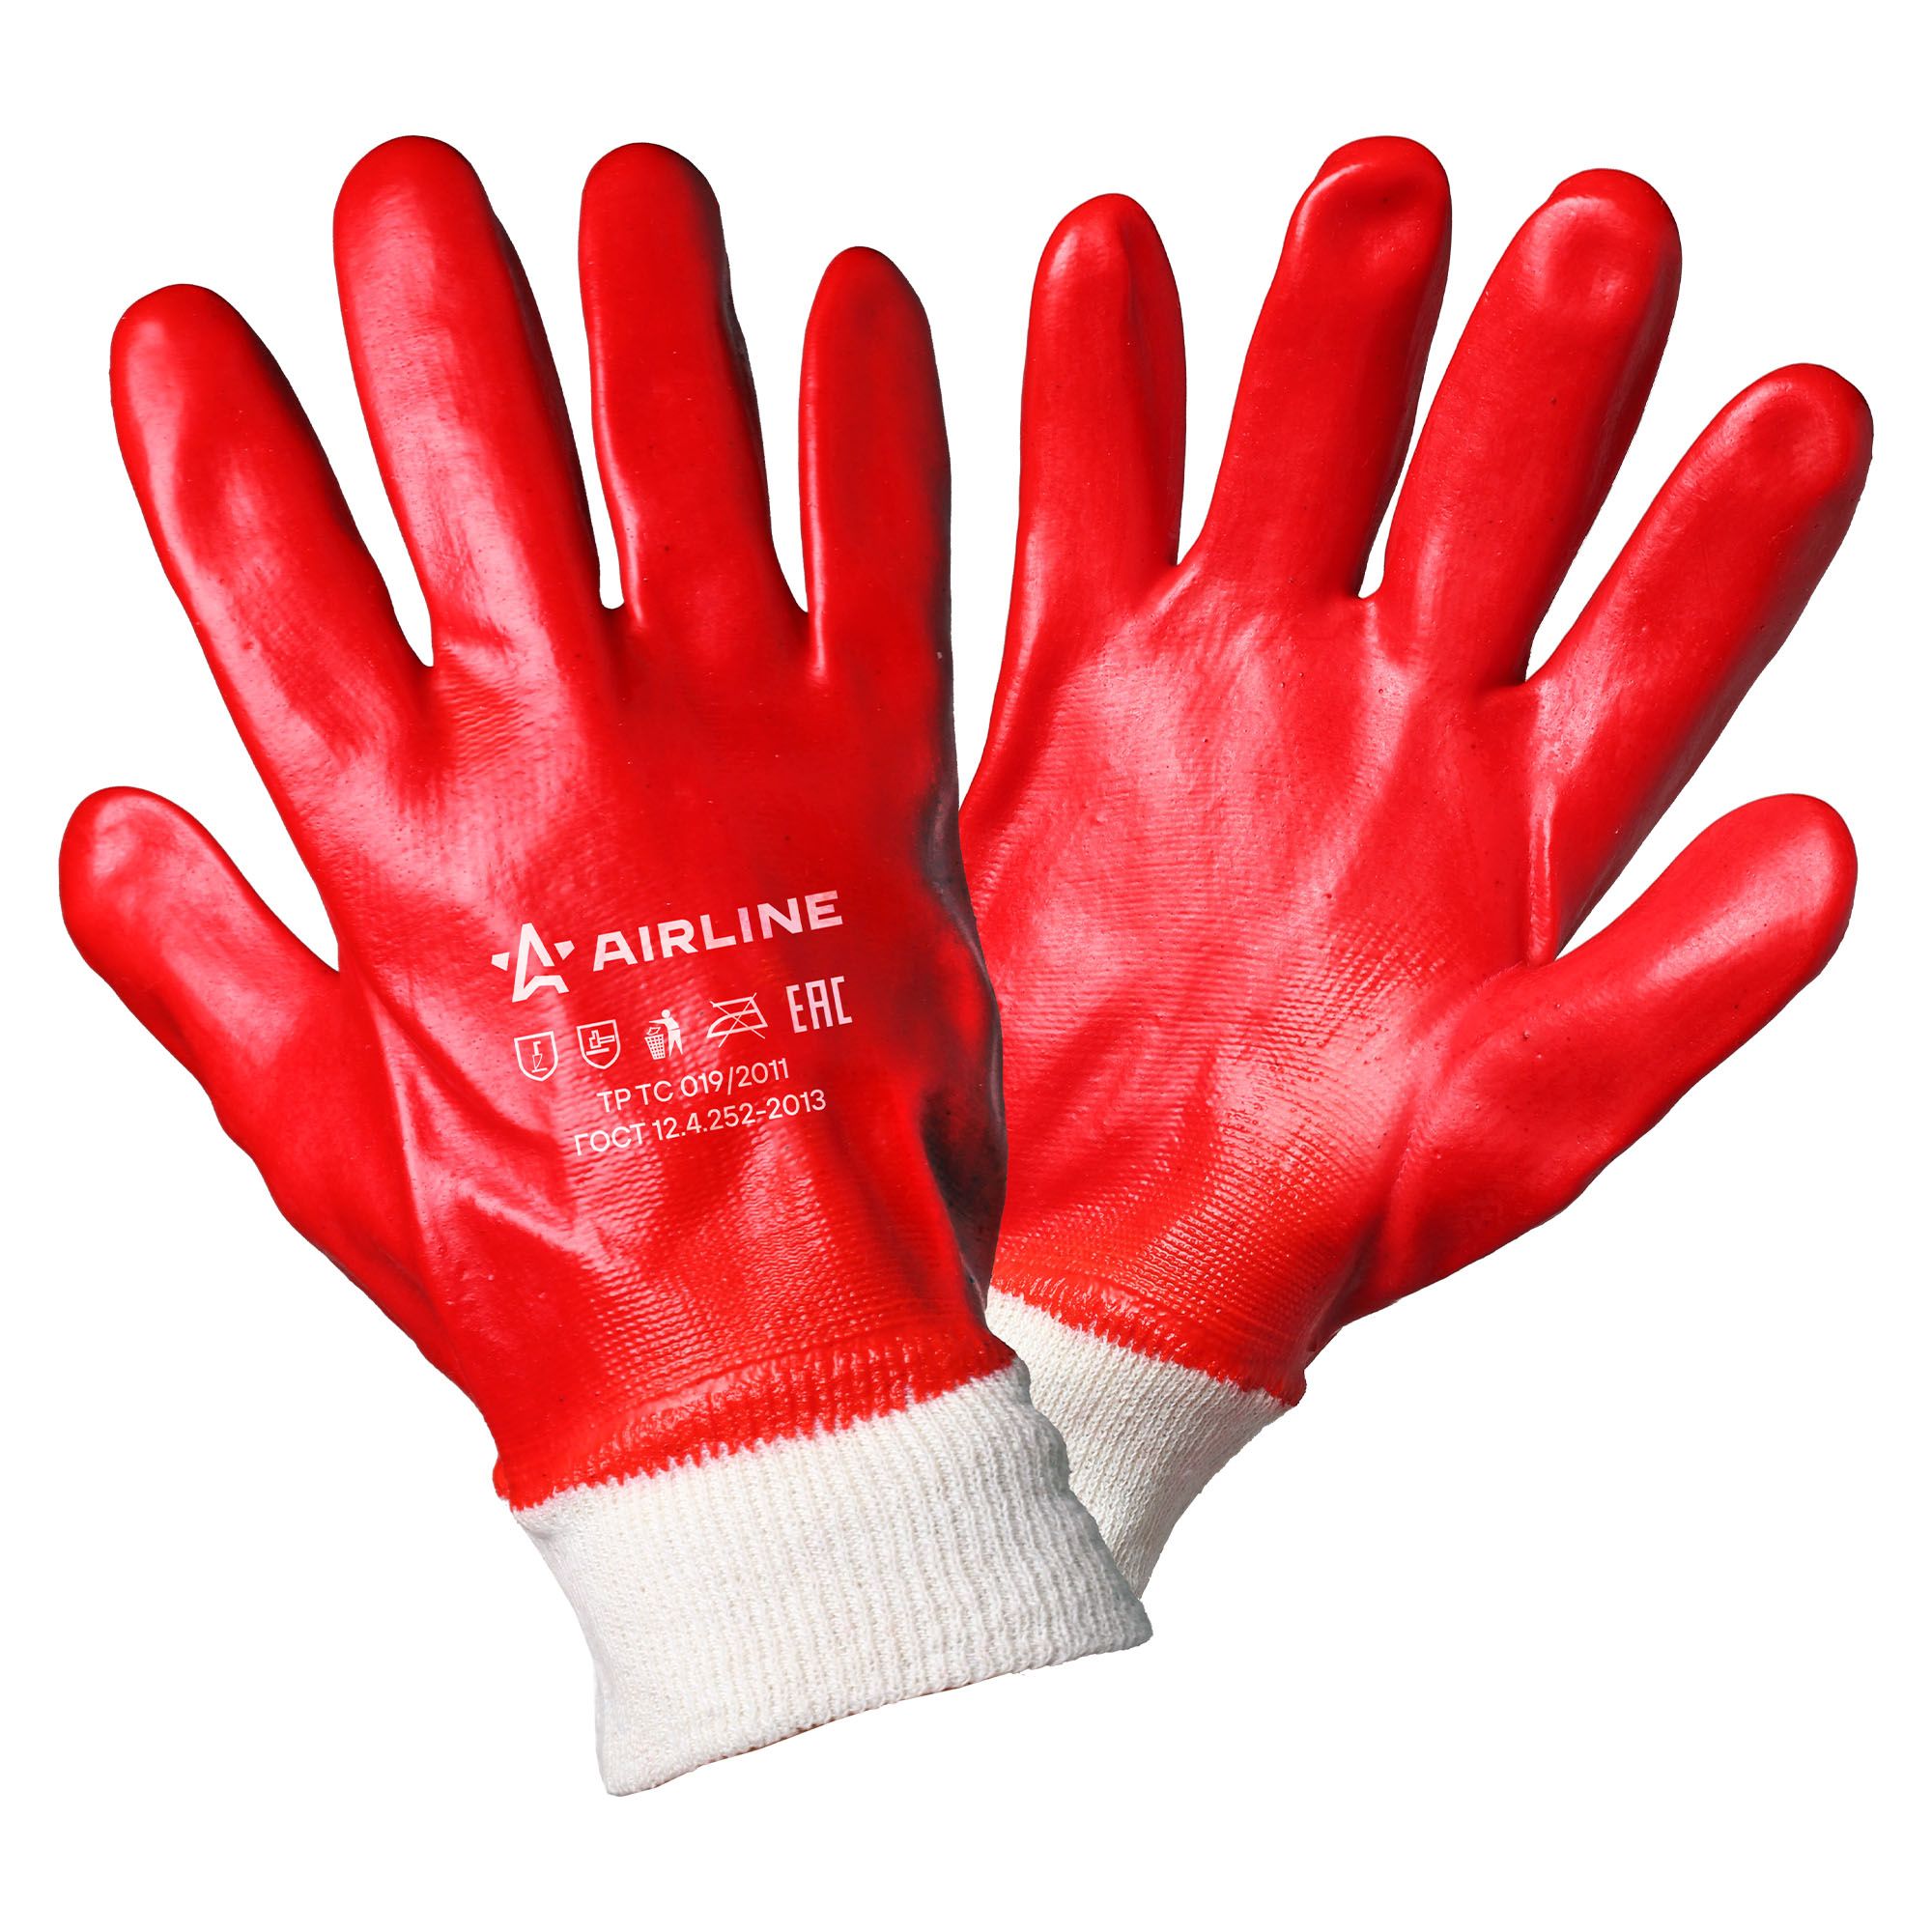 фото Airline awgo04 перчатки рабочие с полным пвх покрытием кисти, мбс (xl), красные (awg-o-04)